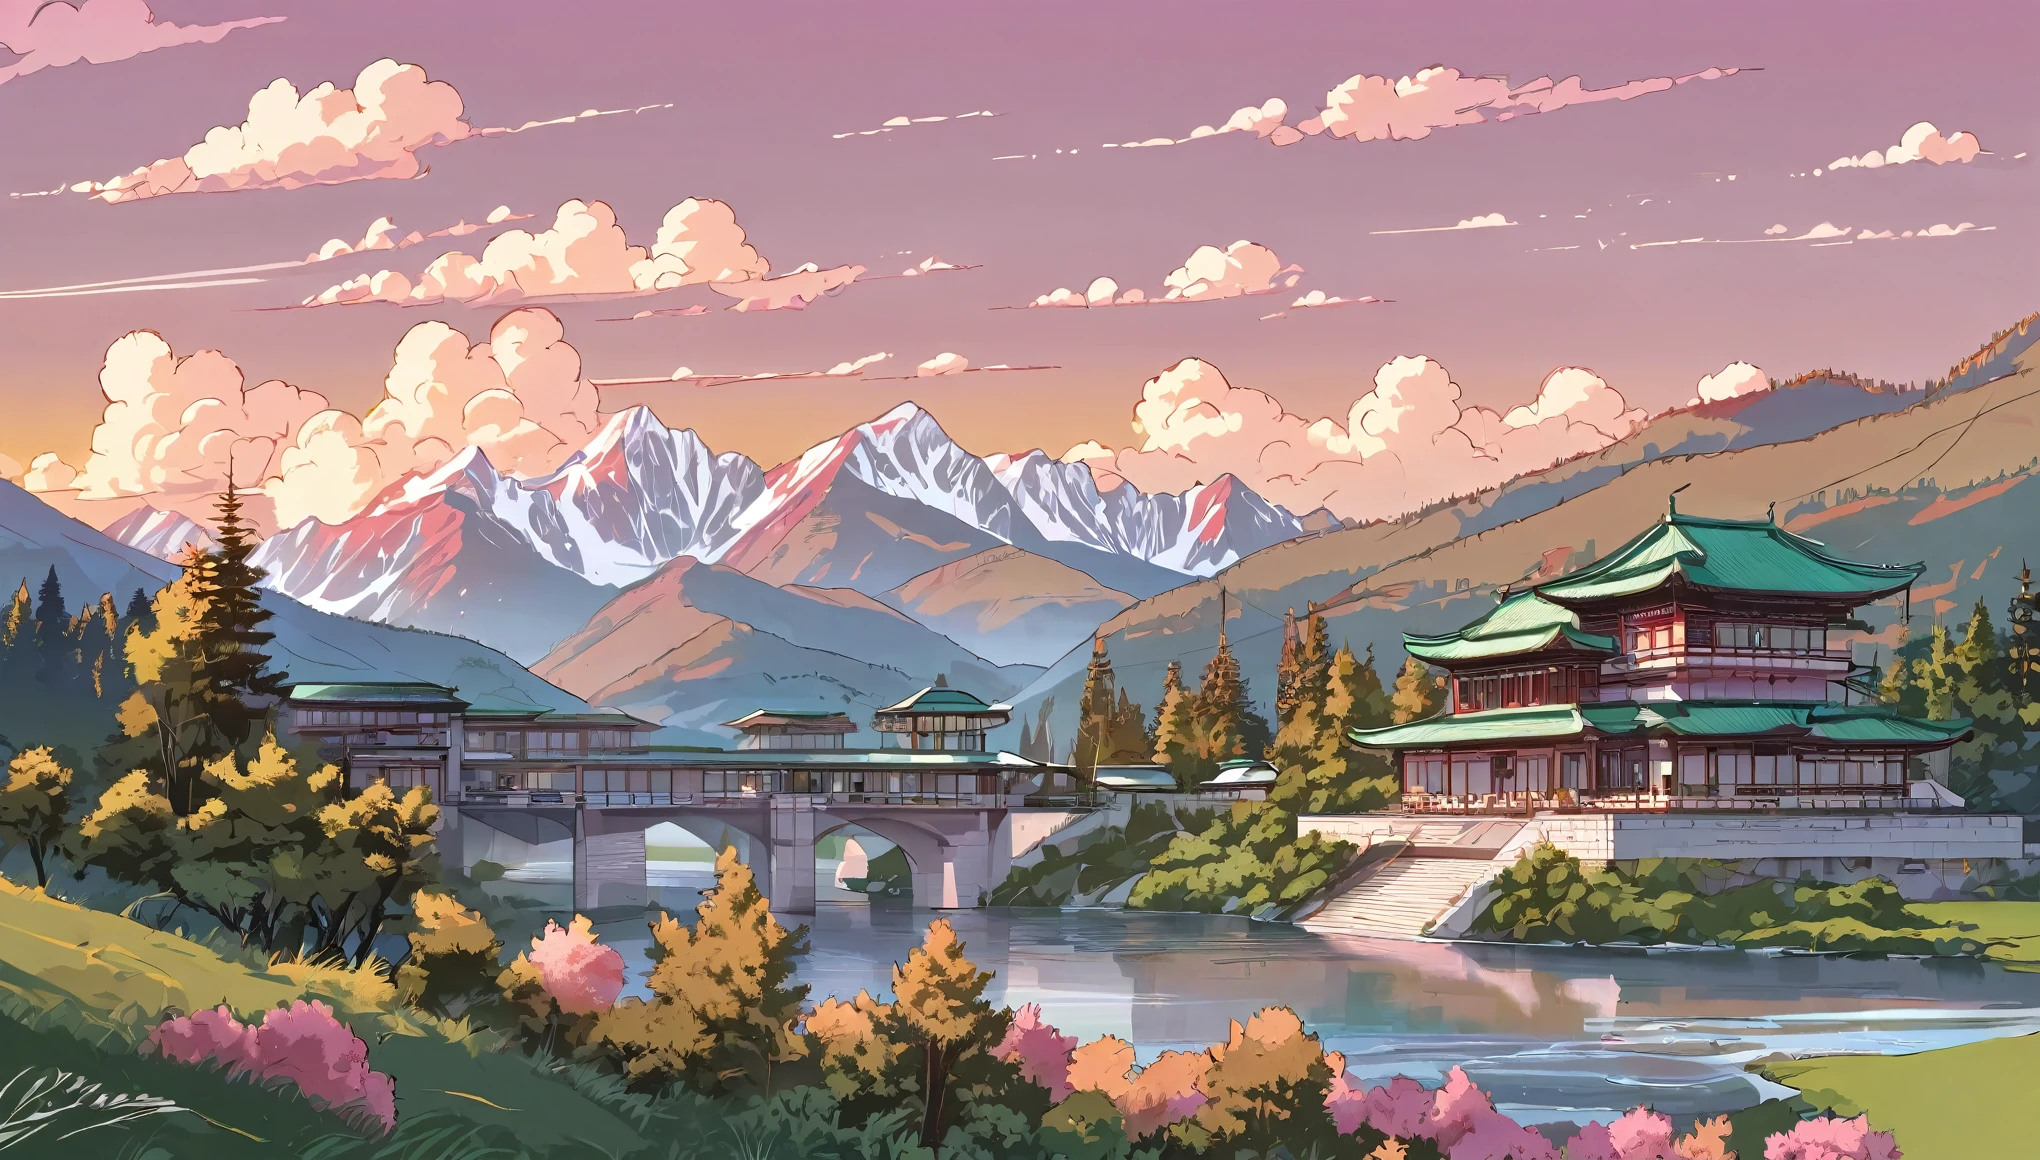 線画, 美的芸術, 夕方, 日没, 雲, 谷間で, 大きな山々に囲まれた, 川沿いの非常に詳細な建築家の家, 緑の木々, 茂み, 日没 light pink colour.